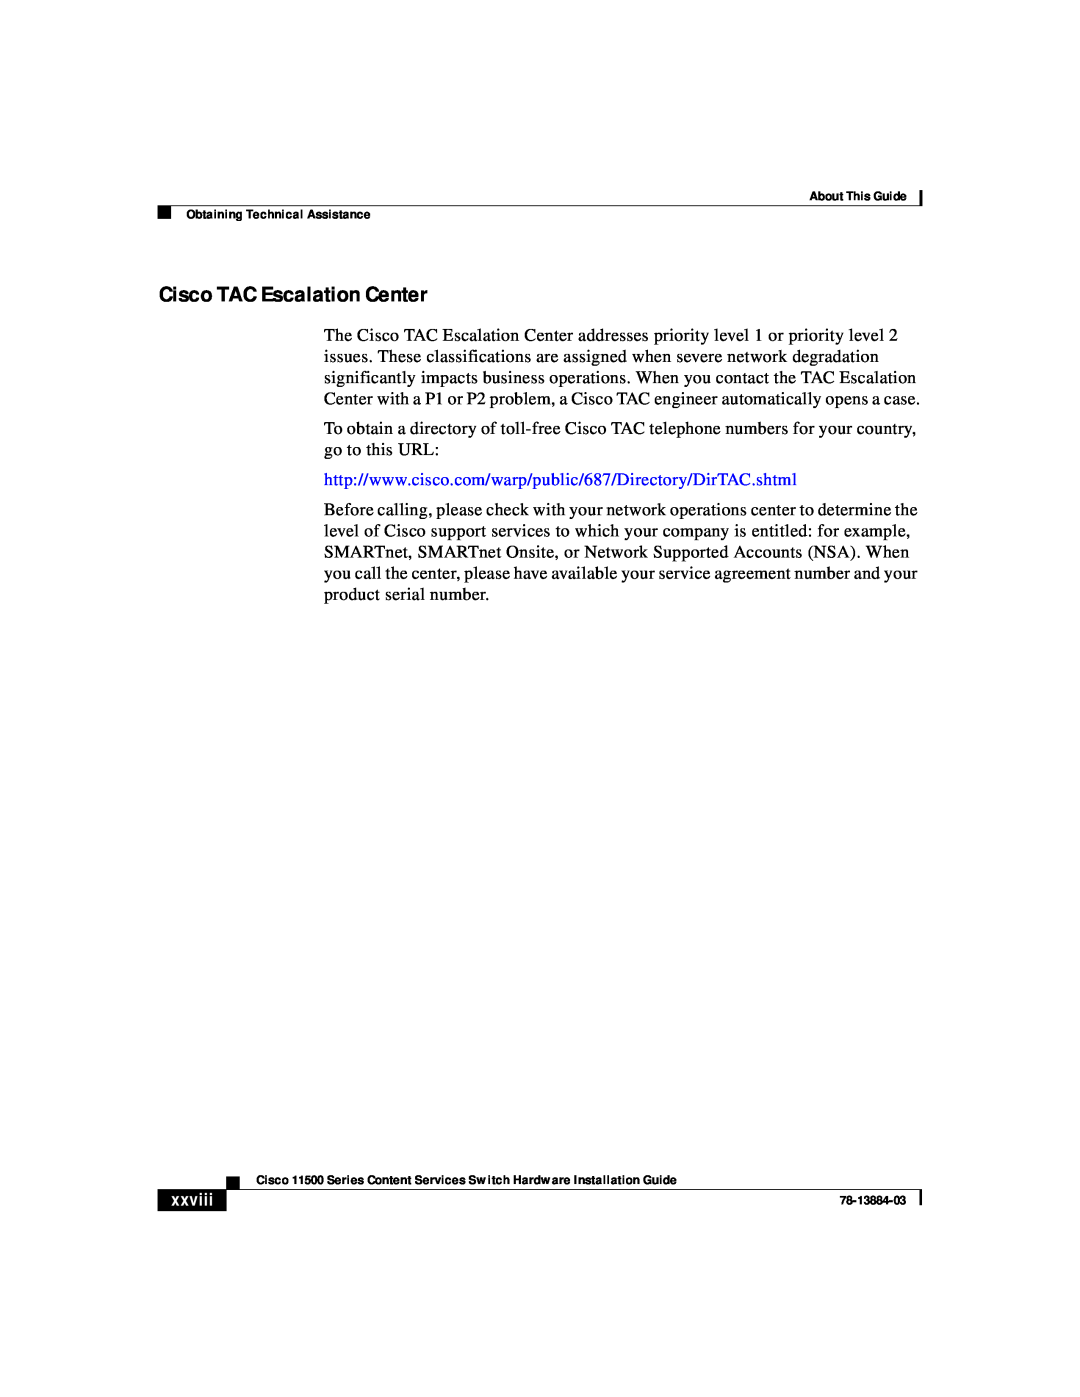 Cisco Systems 11500 Series manual Cisco TAC Escalation Center, xxviii 